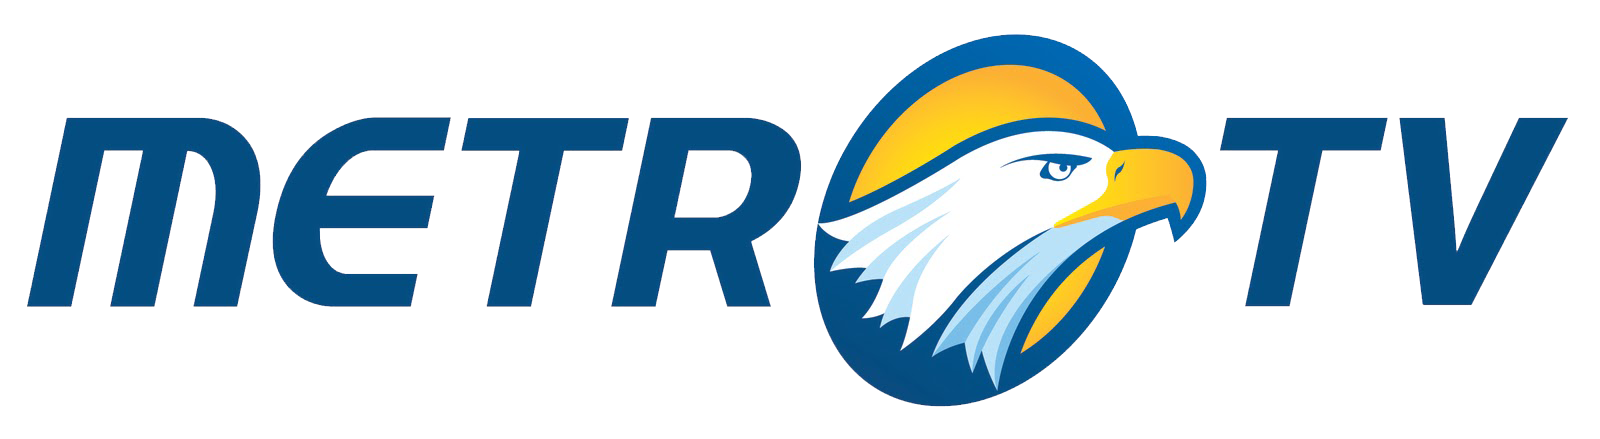 gambar logo stasiun televisi metro tv